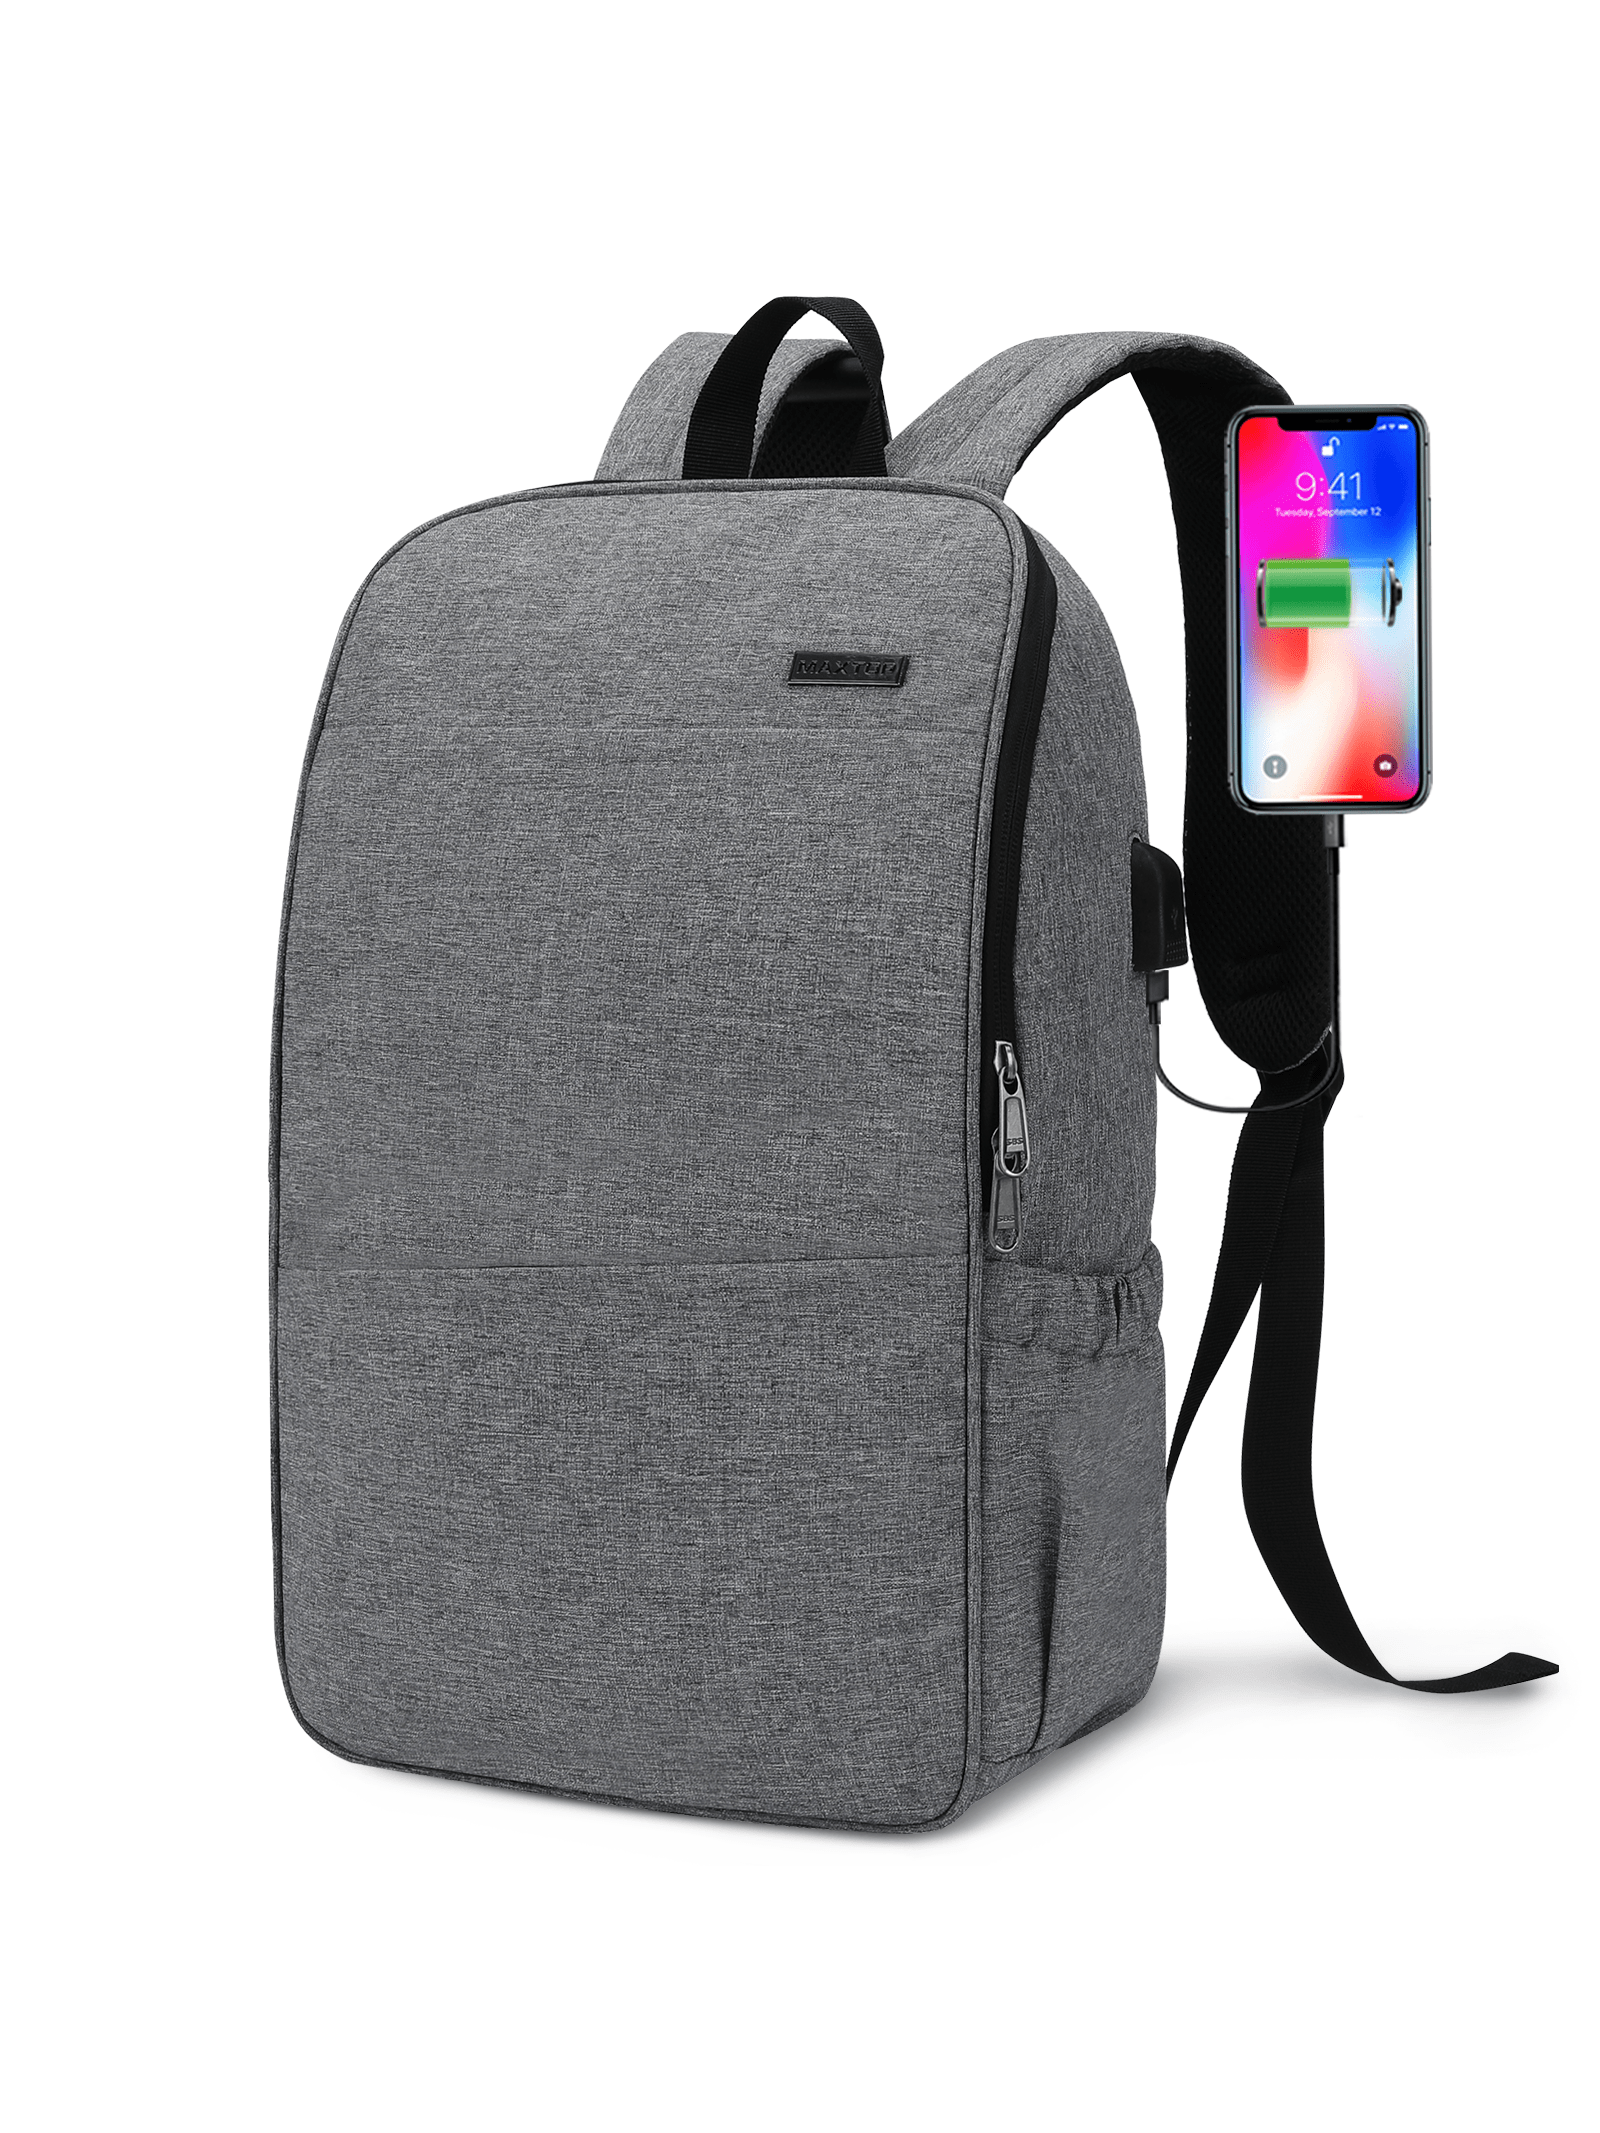 Рюкзак для ноутбука MAXTOP с глубоким хранилищем и USB-портом для зарядки Сумка для студенческого компьютера Подходит для 16-дюймового ноутбука, серый школьный рюкзак для мальчиков и девочек водонепроницаемый с usb портом